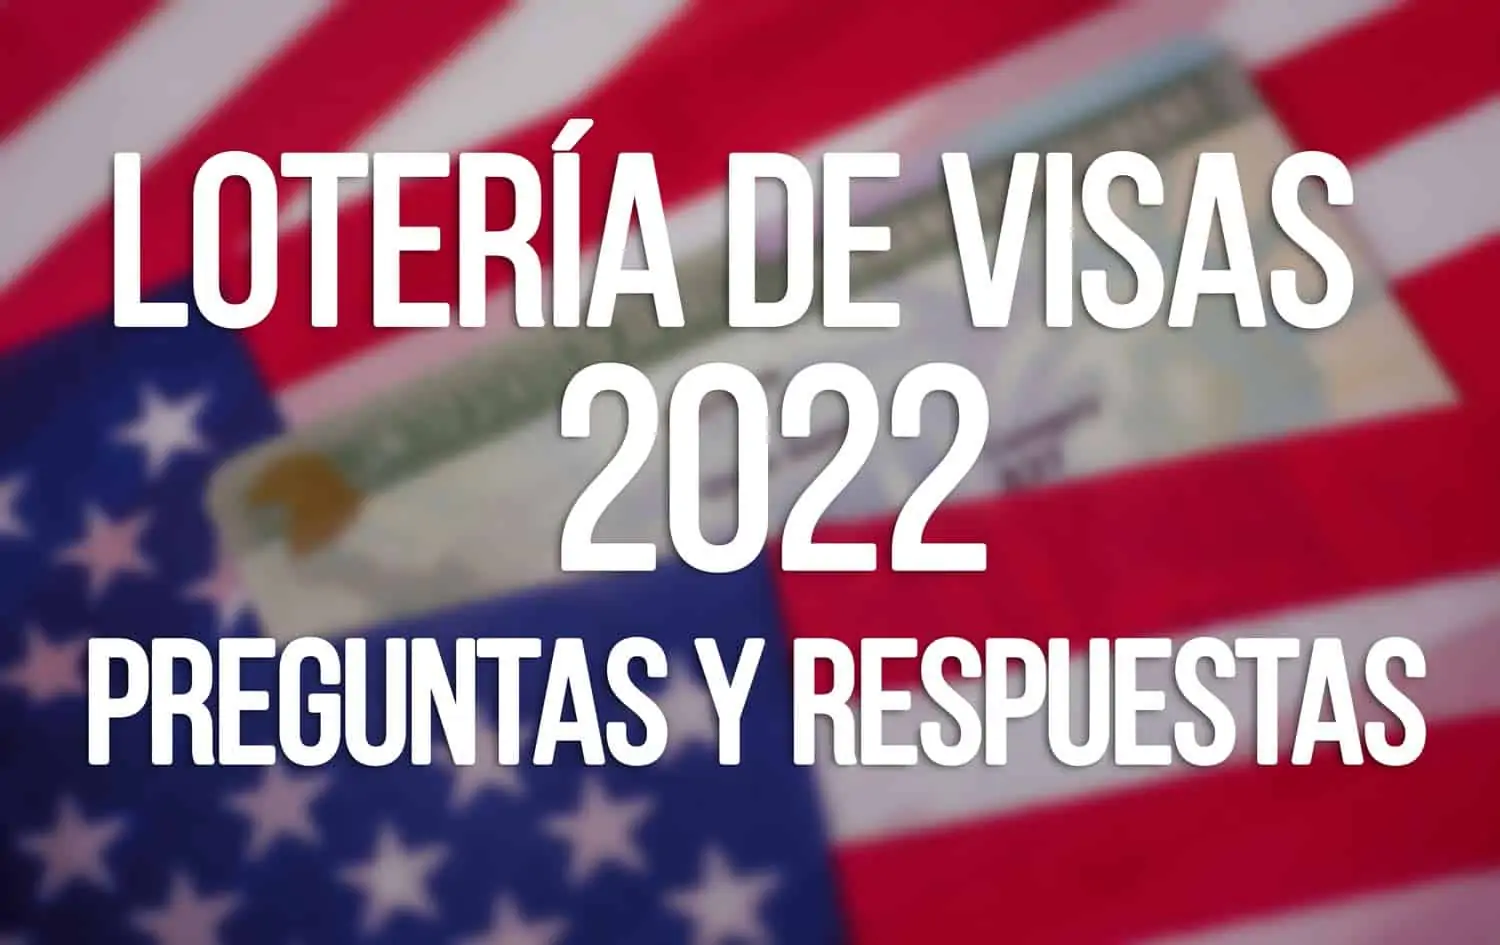 loteria de visas 2022 preguntas y respuestas